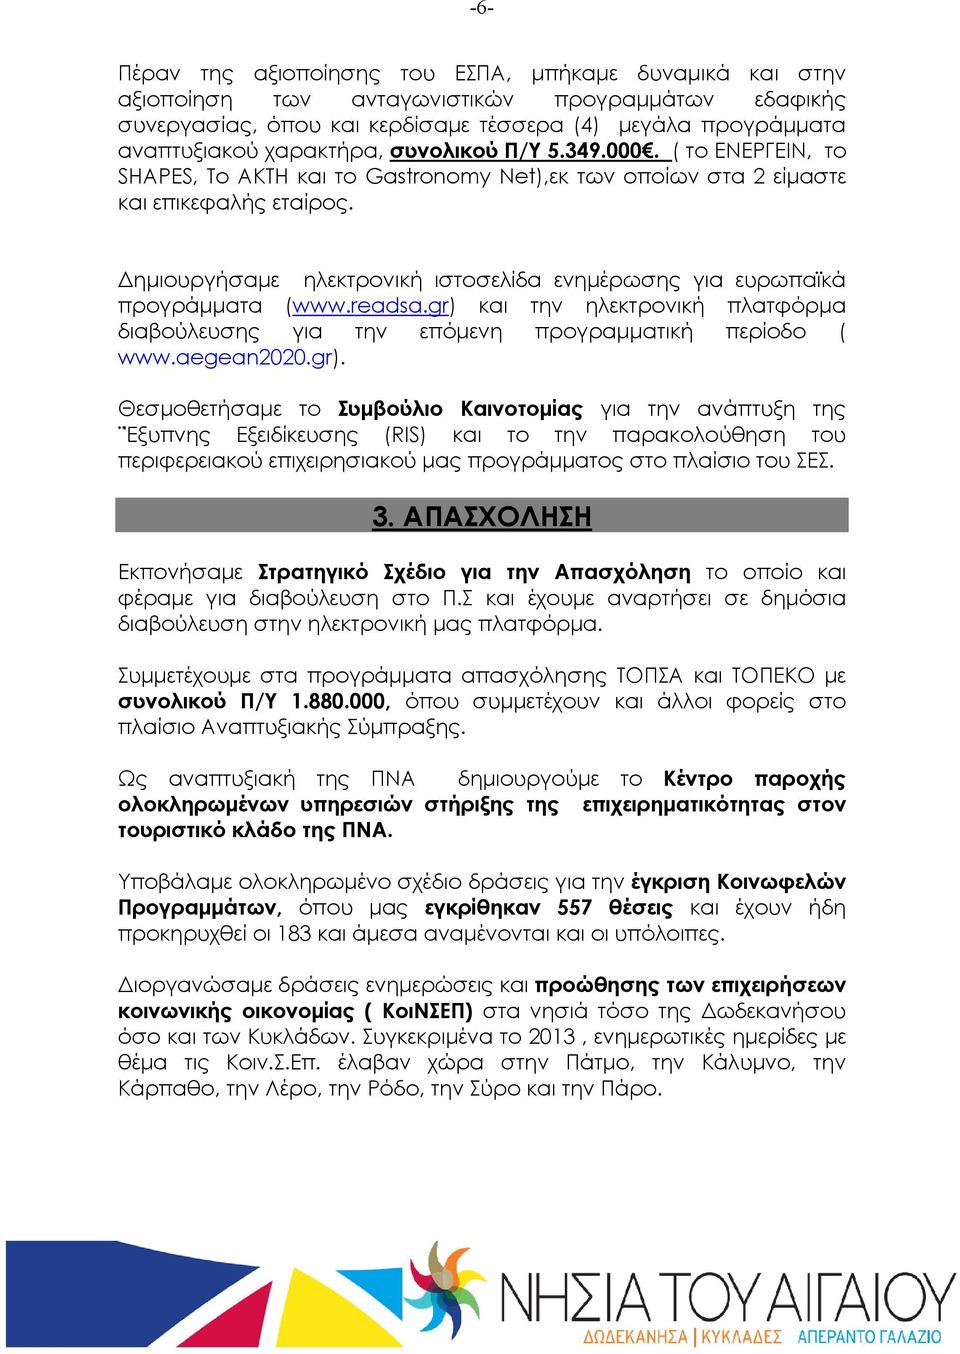 ηµιουργήσαµε ηλεκτρονική ιστοσελίδα ενηµέρωσης για ευρωπαϊκά προγράµµατα (www.readsa.gr) 